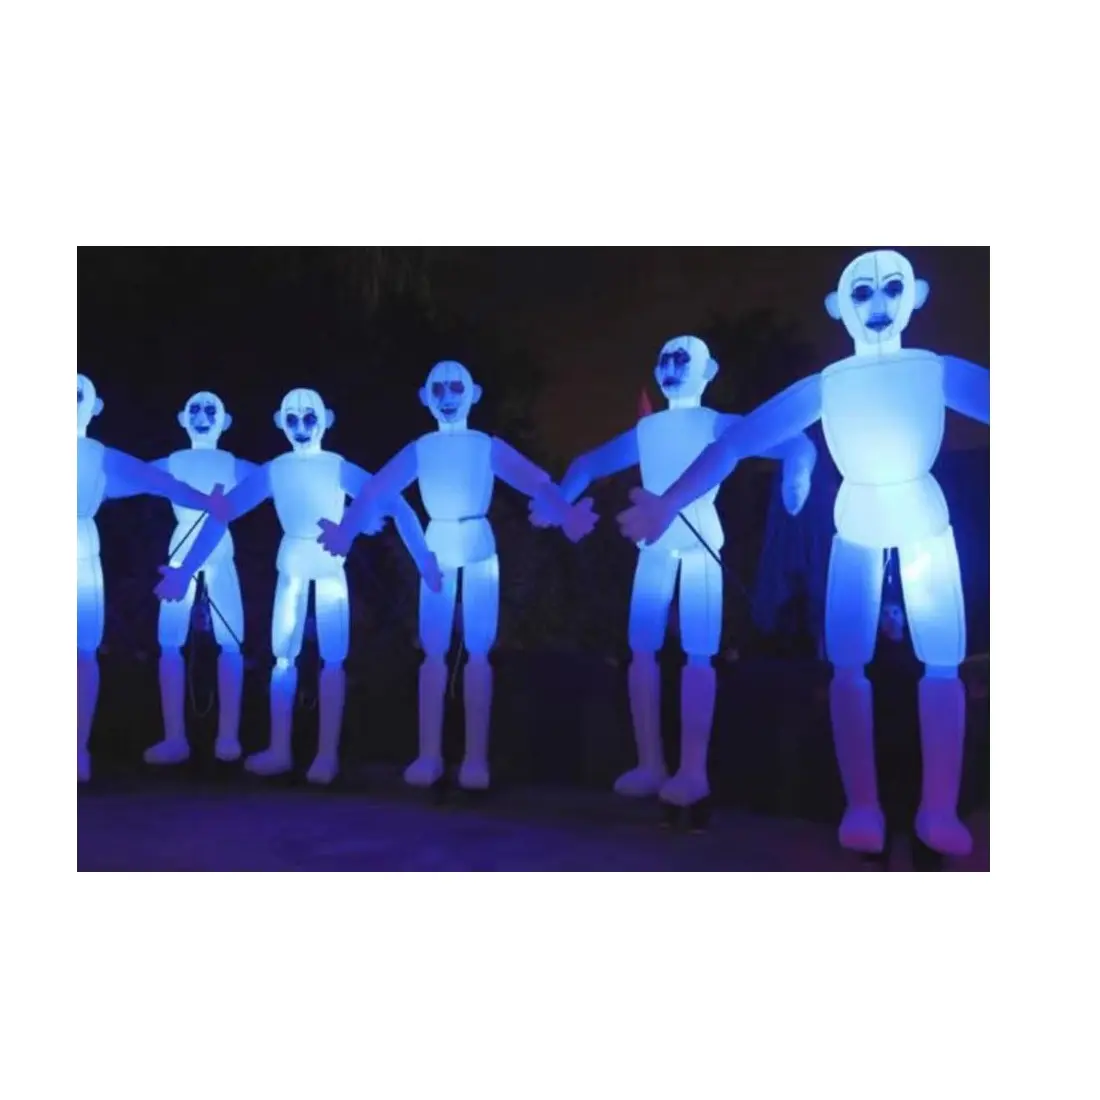 Costume humain gonflable mené géant de carnaval 3.5m de haut Costume de marche de marionnette éclairée gonflable pour le défilé